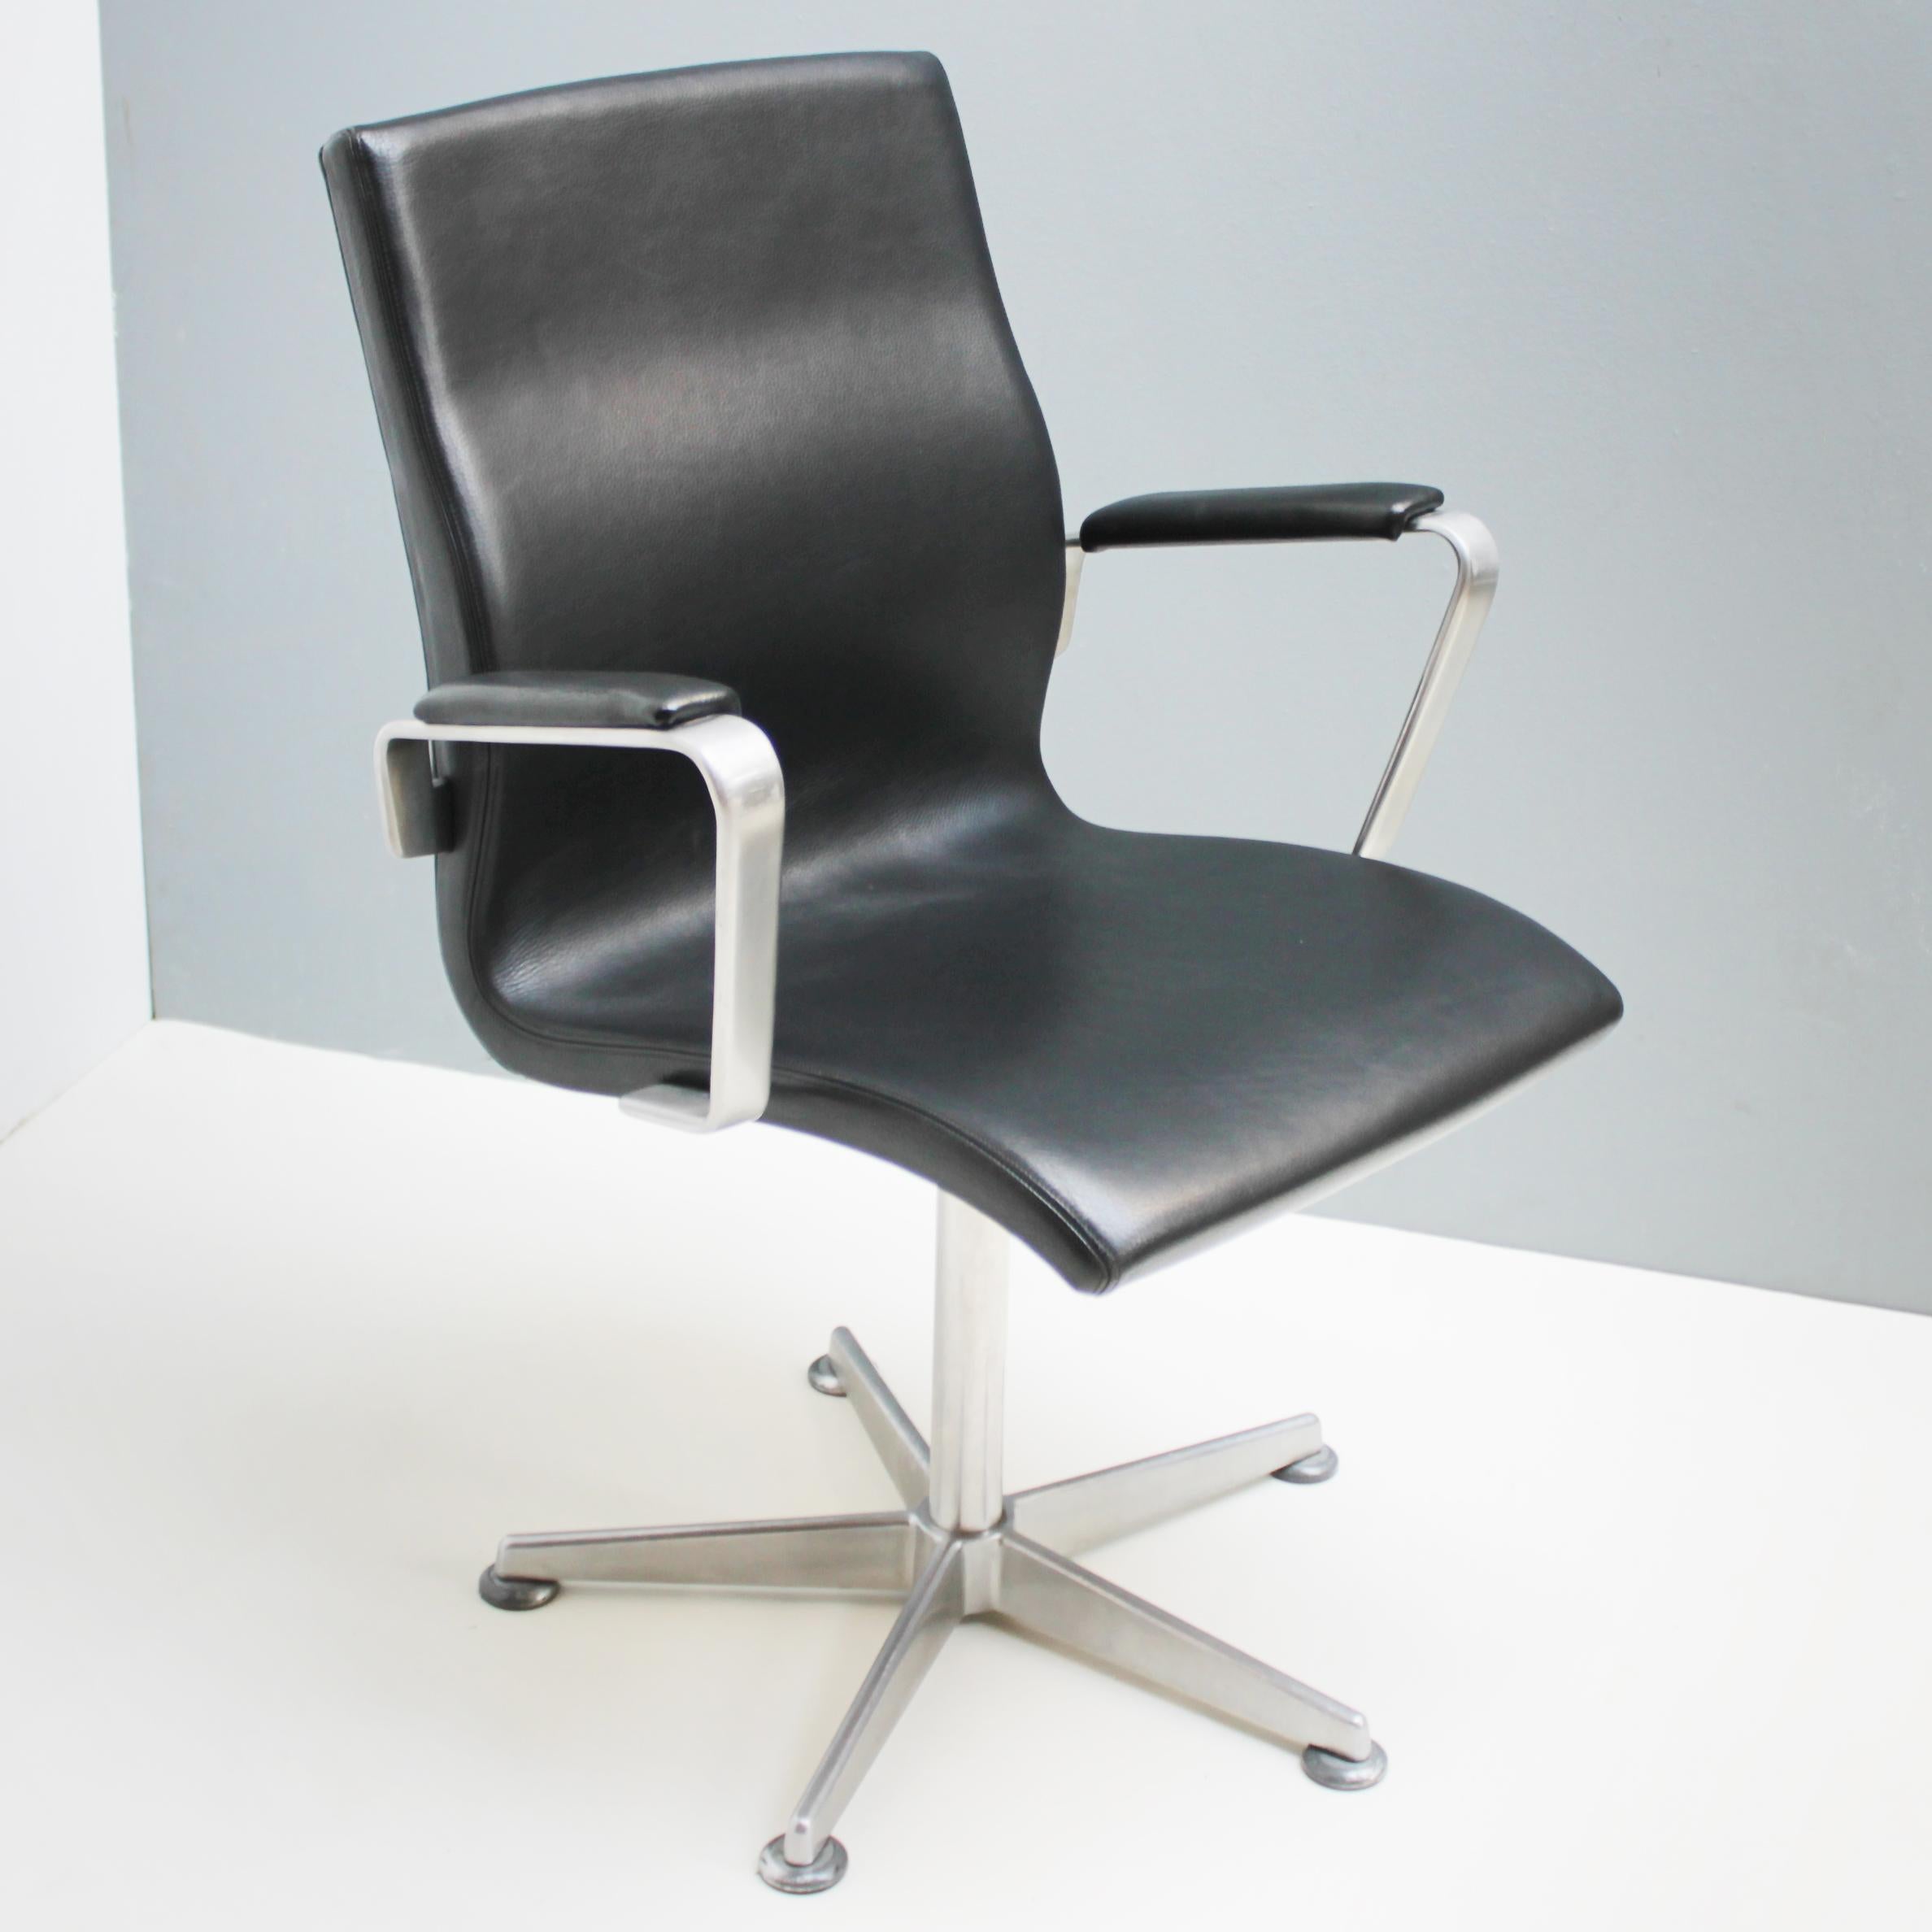 Aluminum Oxford Swivel Chair by Arne Jacobsen for Fritz Hansen